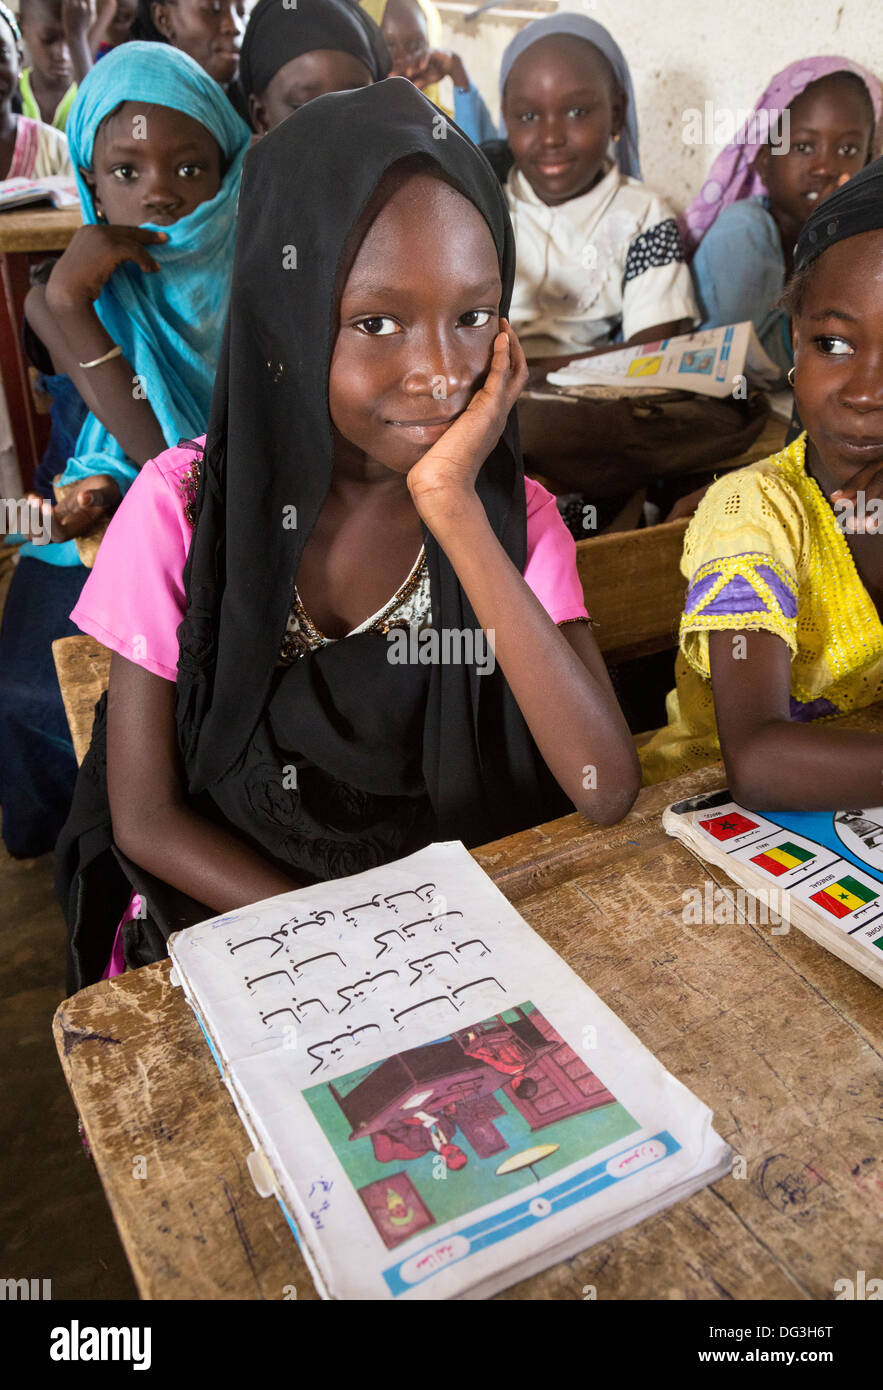 Sénégal, Touba. Jeune fille avec son lecteur arabe Madrasa Al-Azhar, une école pour les études islamiques. Banque D'Images